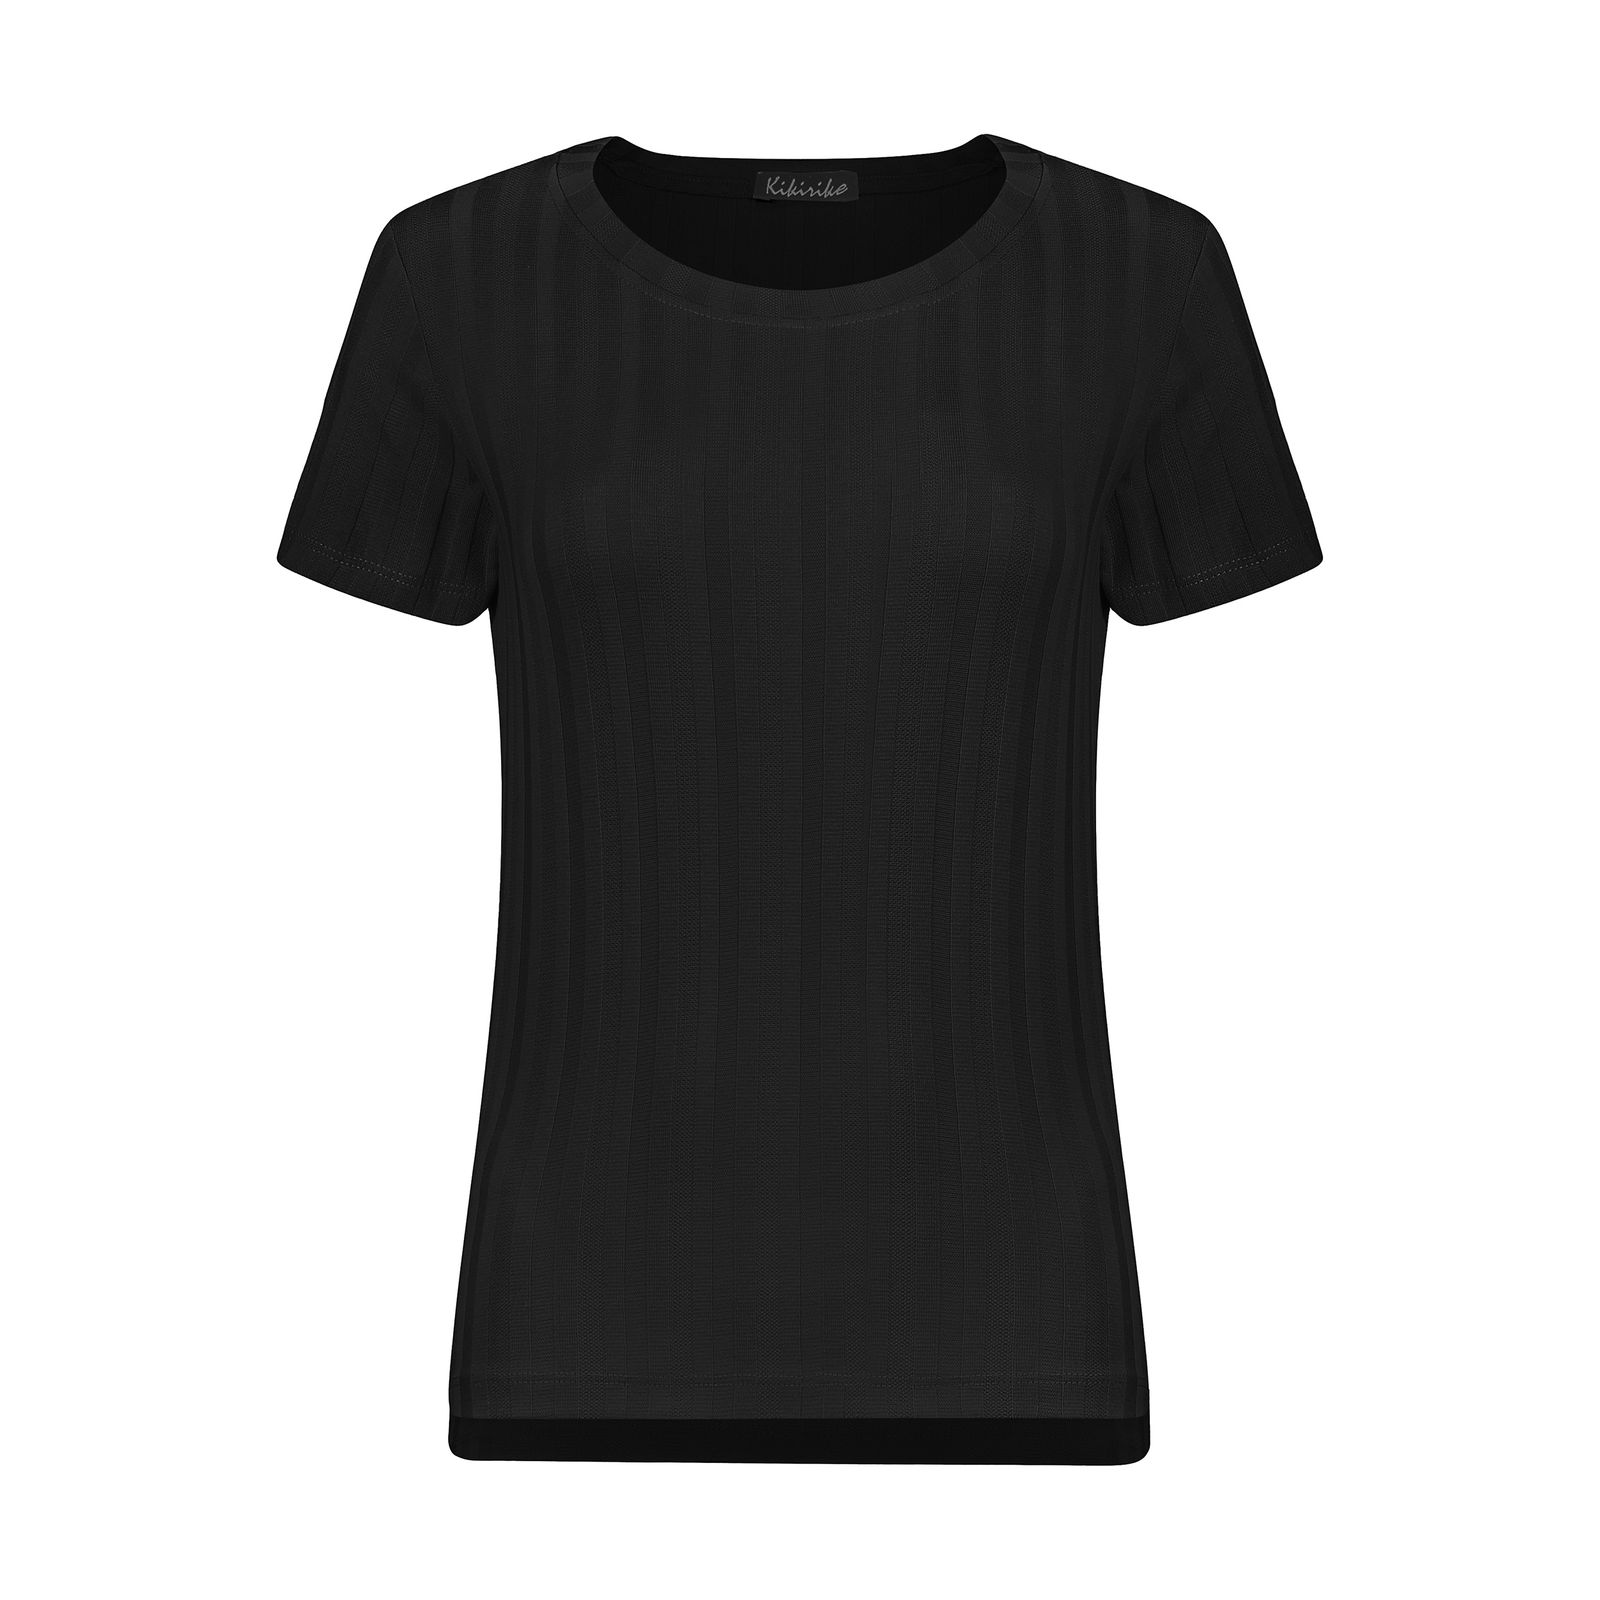 تی شرت زنانه کیکی رایکی مدل BB2507-001 -  - 1